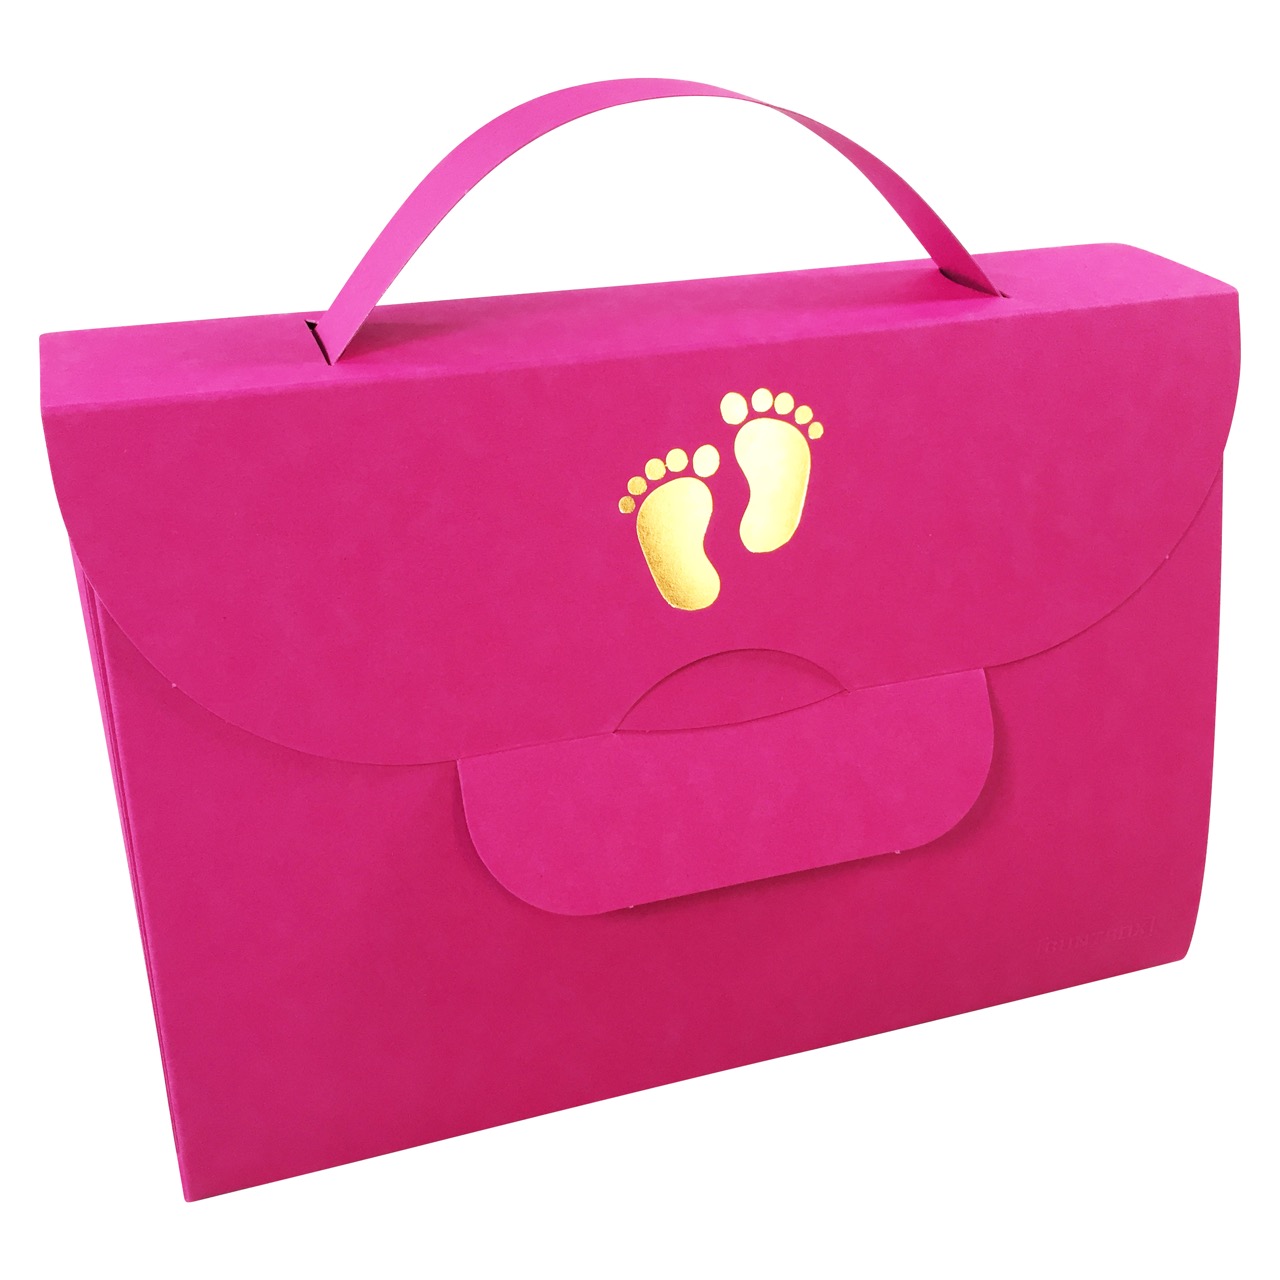 Buntbox Handbag Piedino del bambino